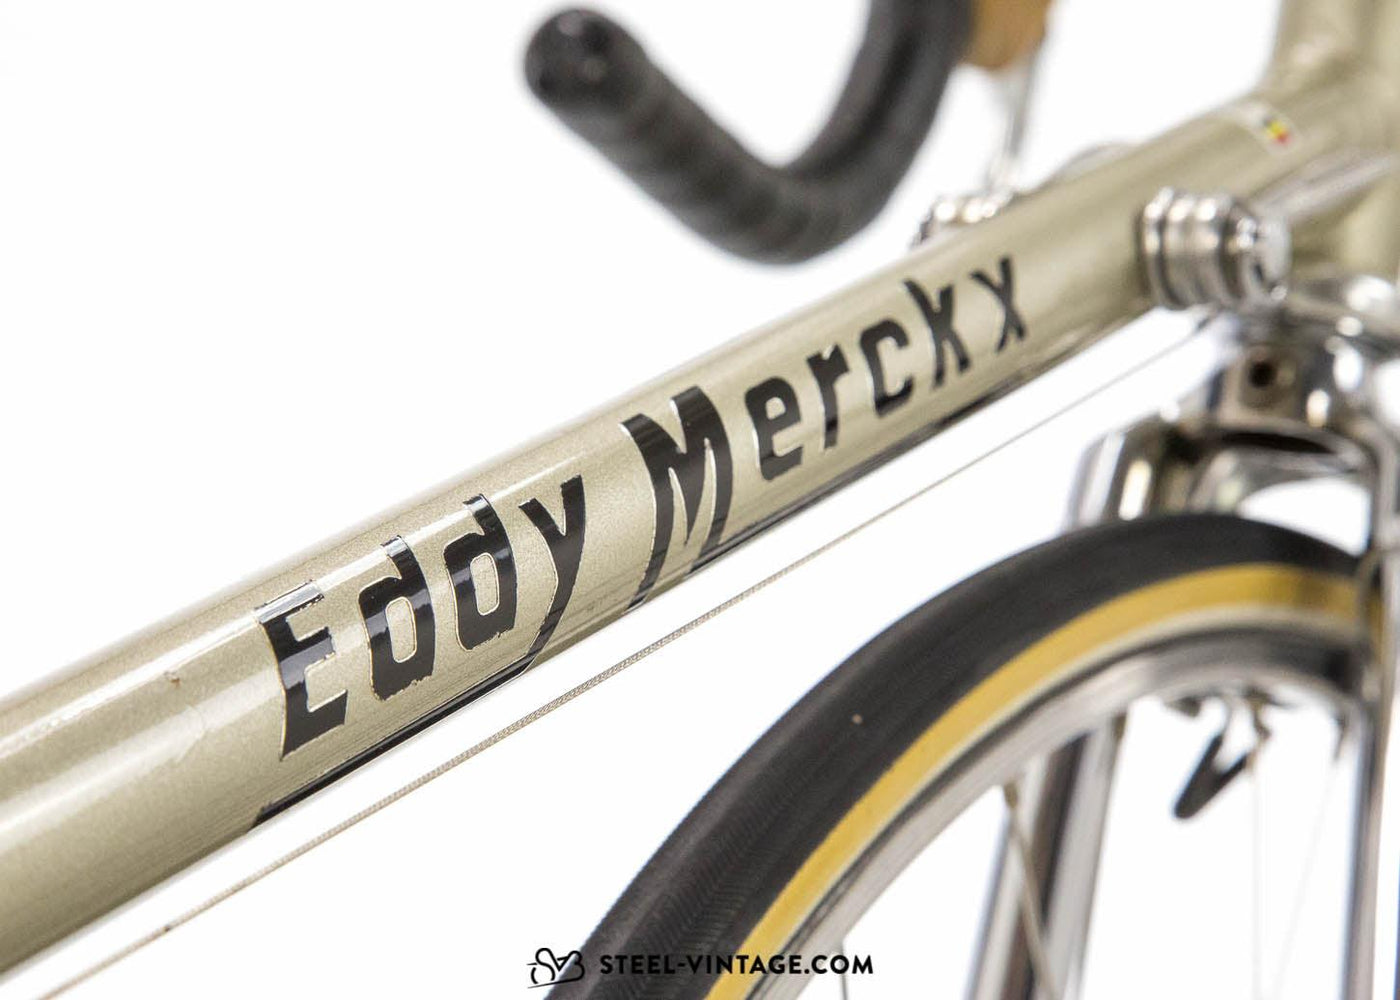 Eddy Merckx Professional Vintage 1981 Road Bike - Steel Vintage Bikes